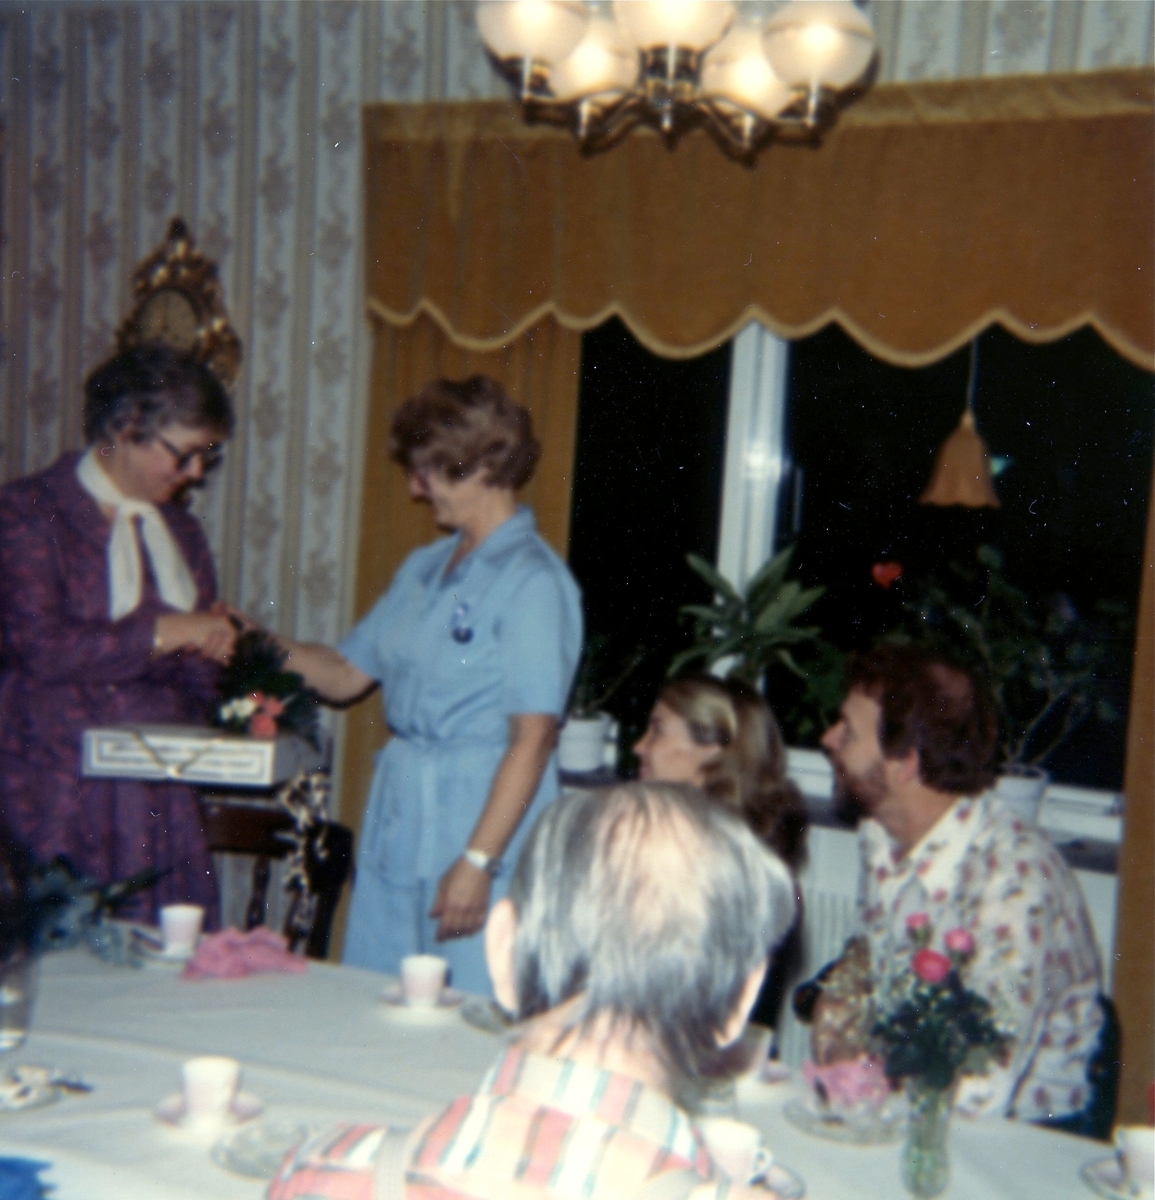 Avtackning av Inga Svanberg som ska gå i pension, år 1982. Hon hade arbetat som kokerska på Brattåshemmet (gamla ålderdomshemmet). Från vänster: Inga Svanberg, Aina Ekstedt (föreståndare), Inga Britt (vårdbiträde) samt Ralf (vaktmästare). Okänd man i förgrunden.